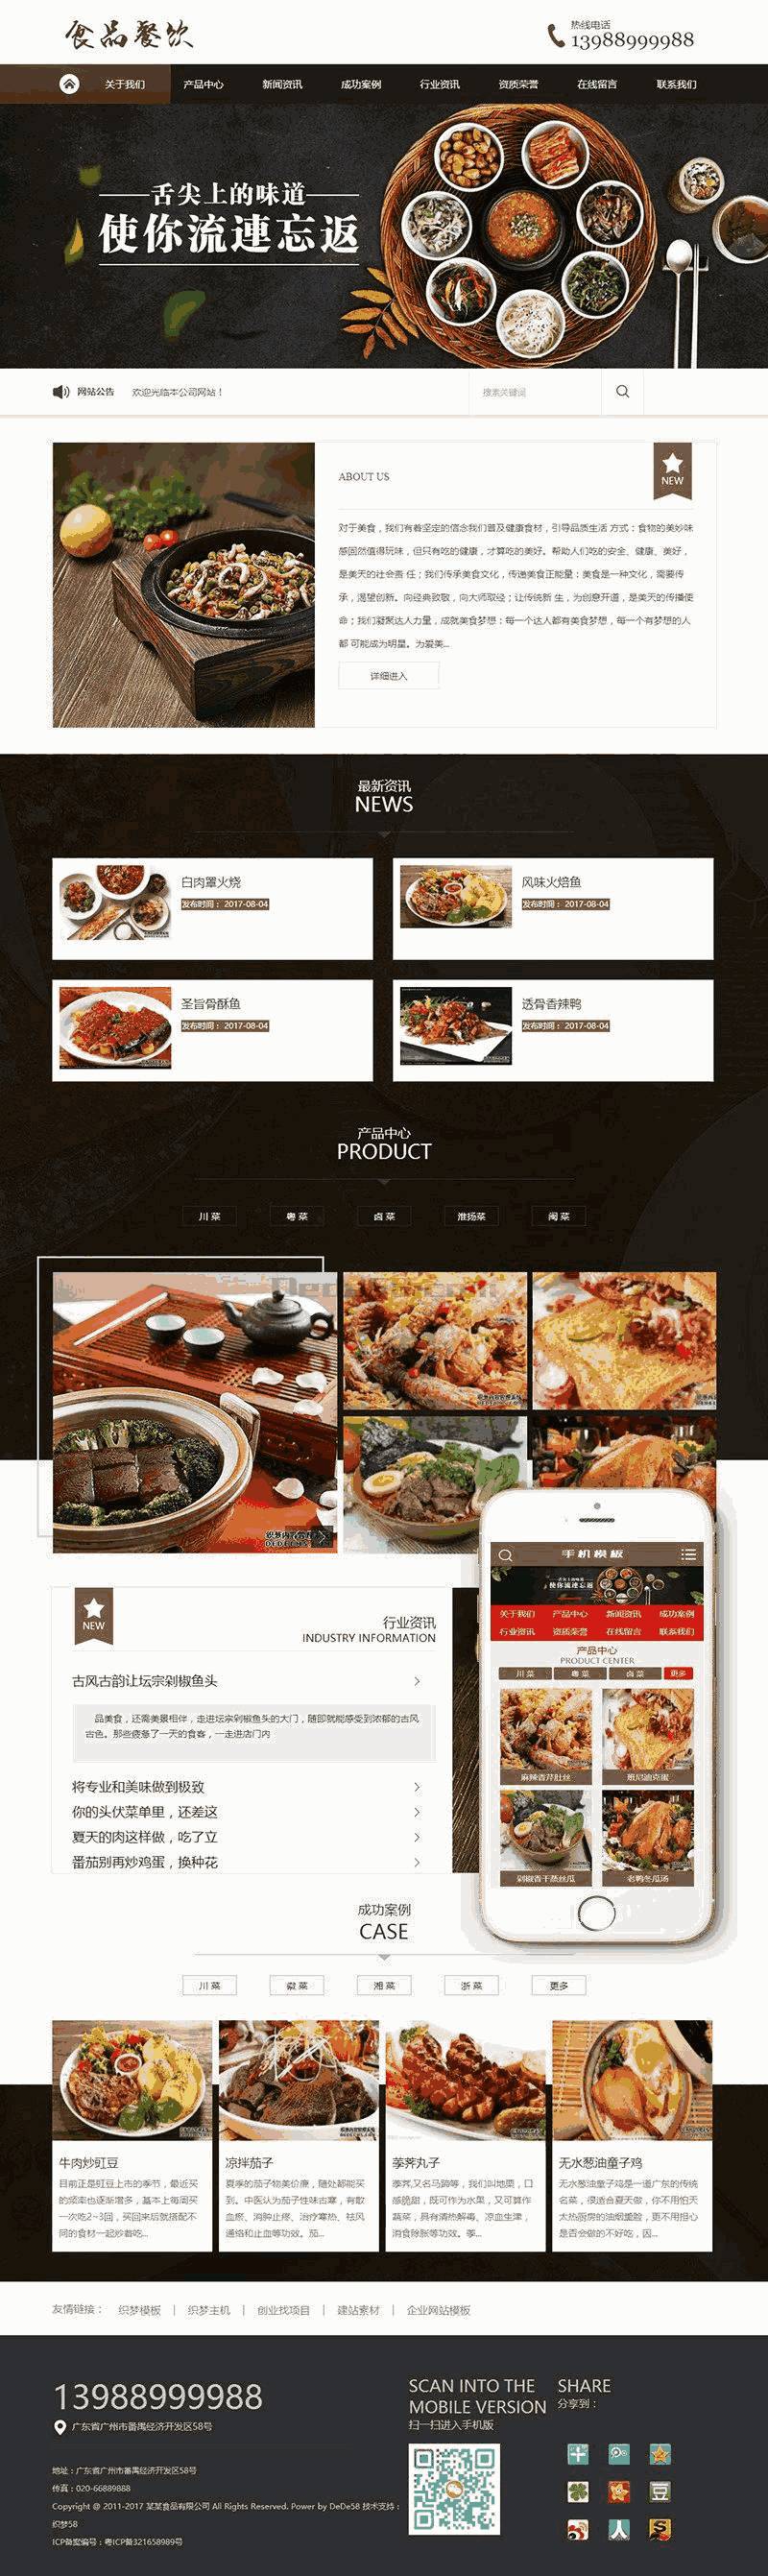 健康食品餐饮美食类网站Wordpress模板带手机端效果图